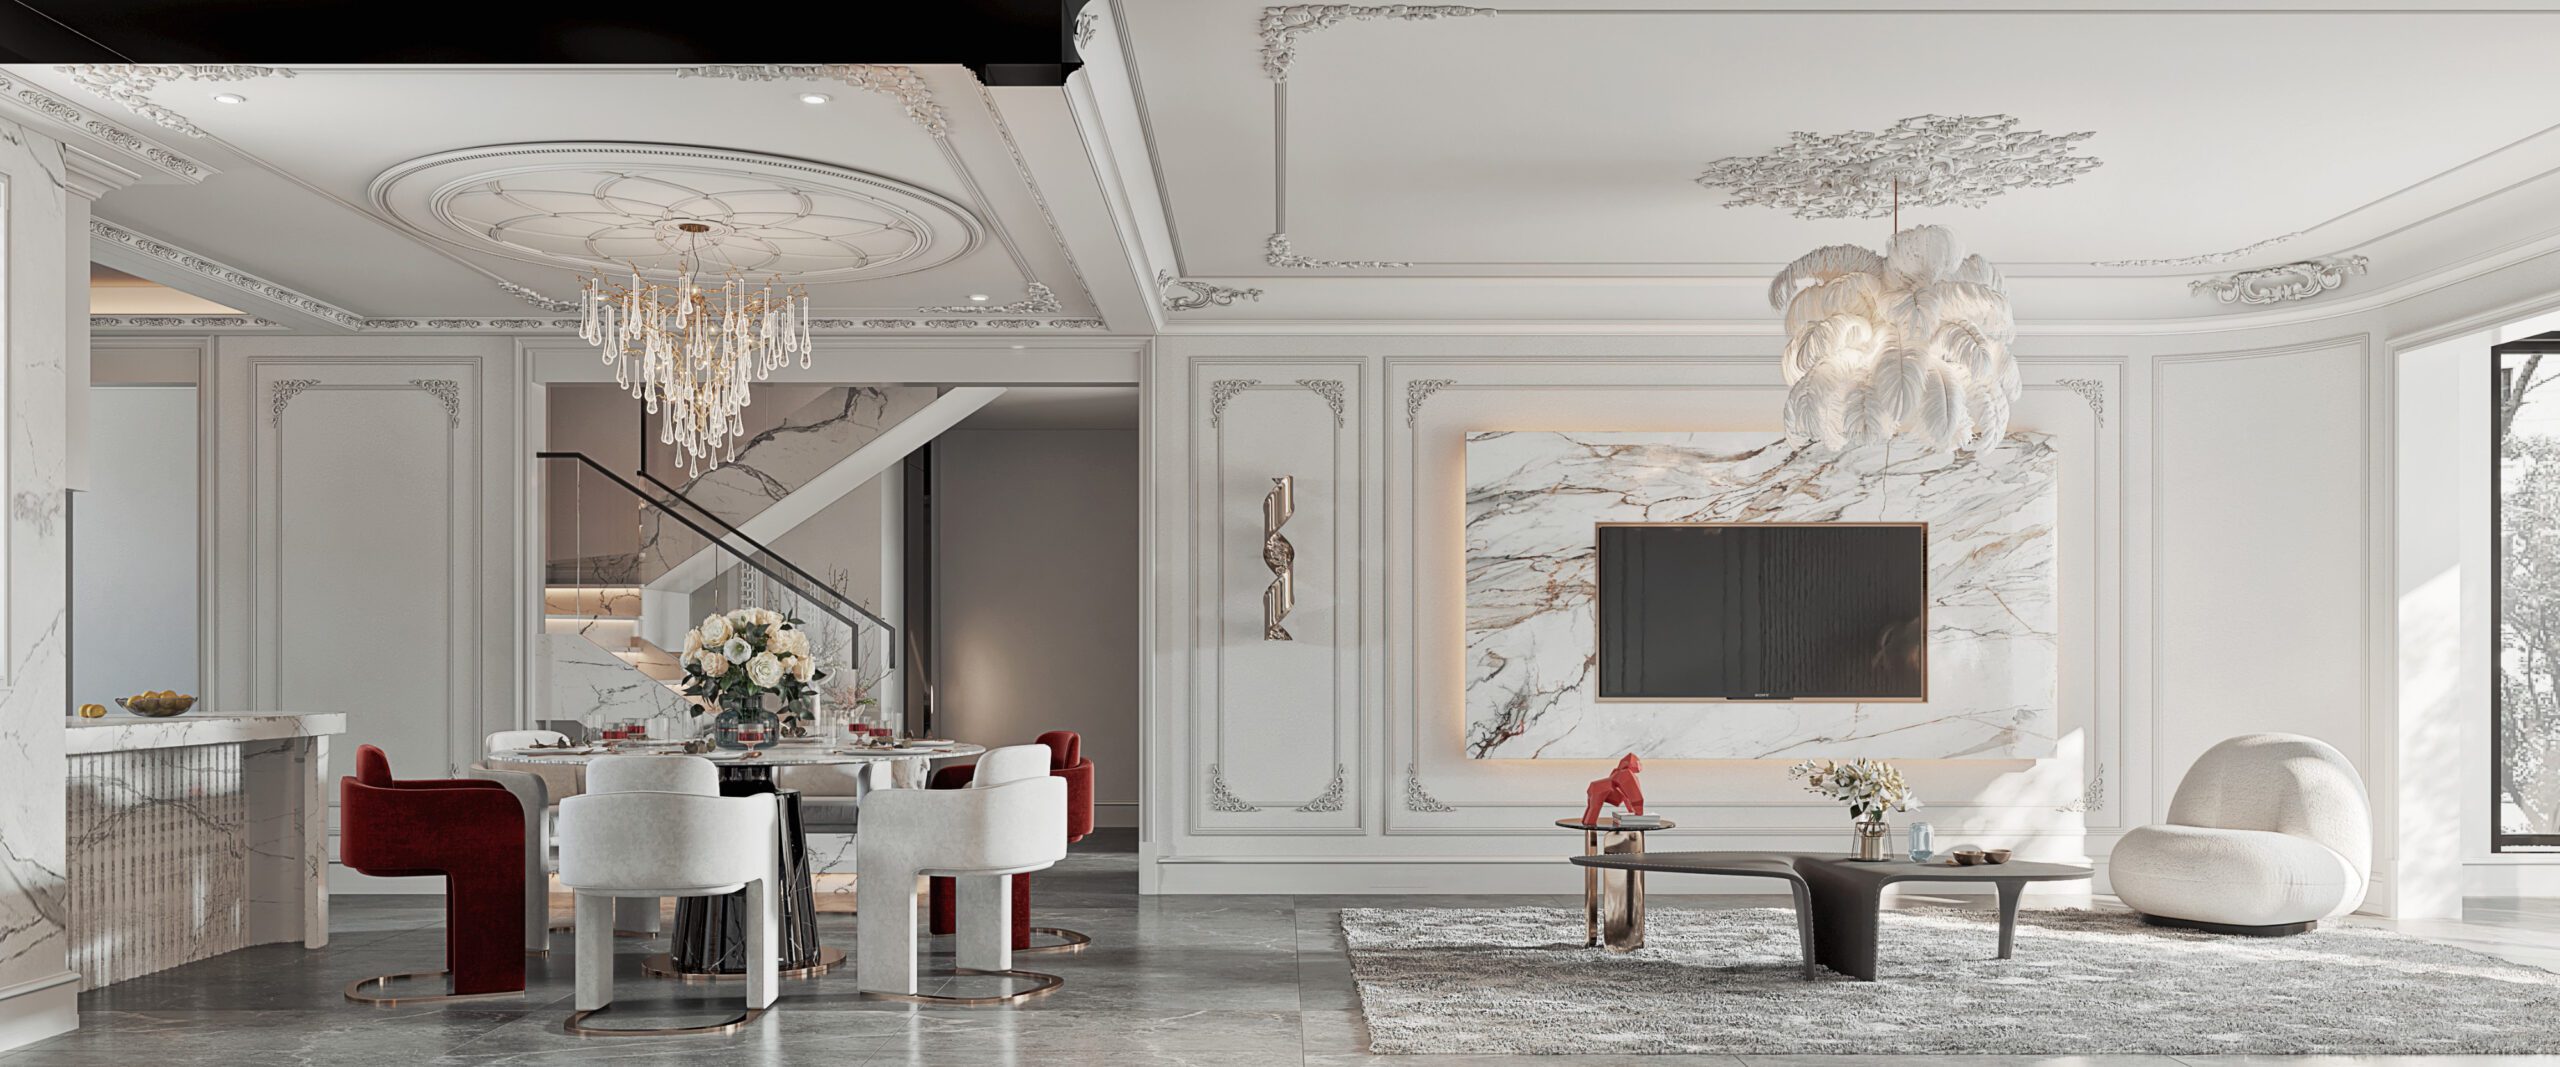 獨棟別墅設計的客廳以現代輕法式展現出溫柔浪漫